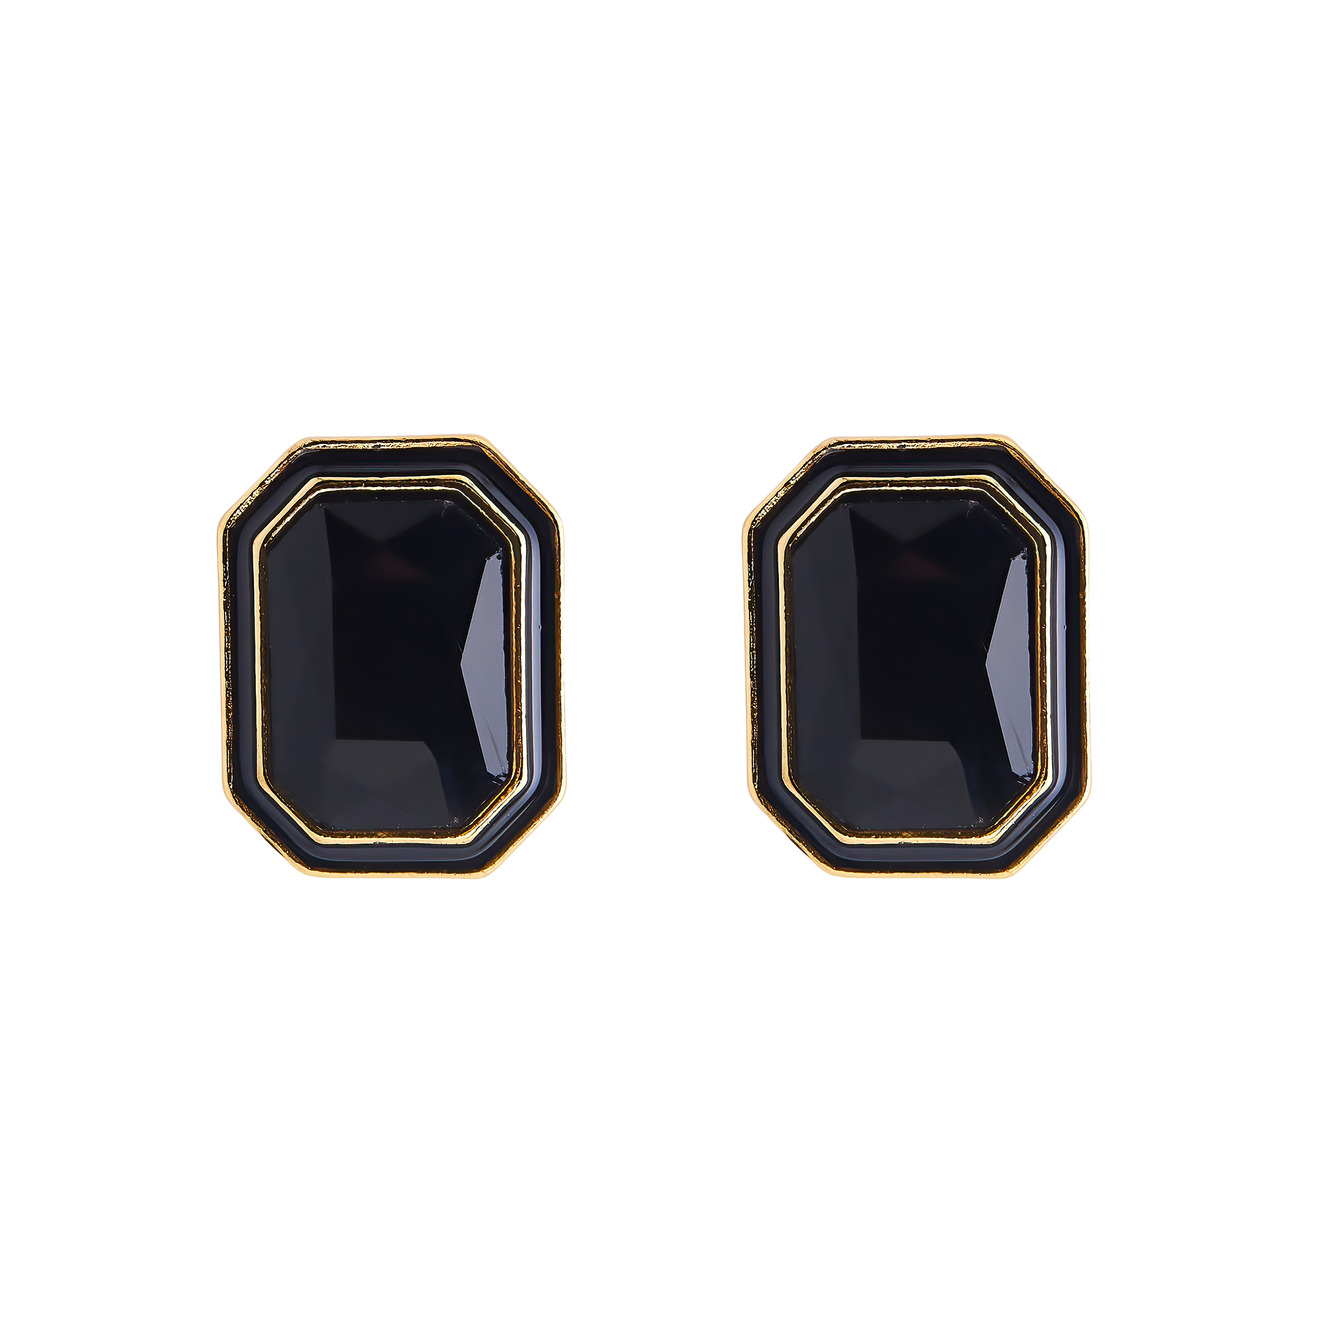 Herald Percy Крупные золотистые серьги с черными кристаллами и черной эмалью liya золотистые крупные серьги пусеты с бирюзовой эмалью